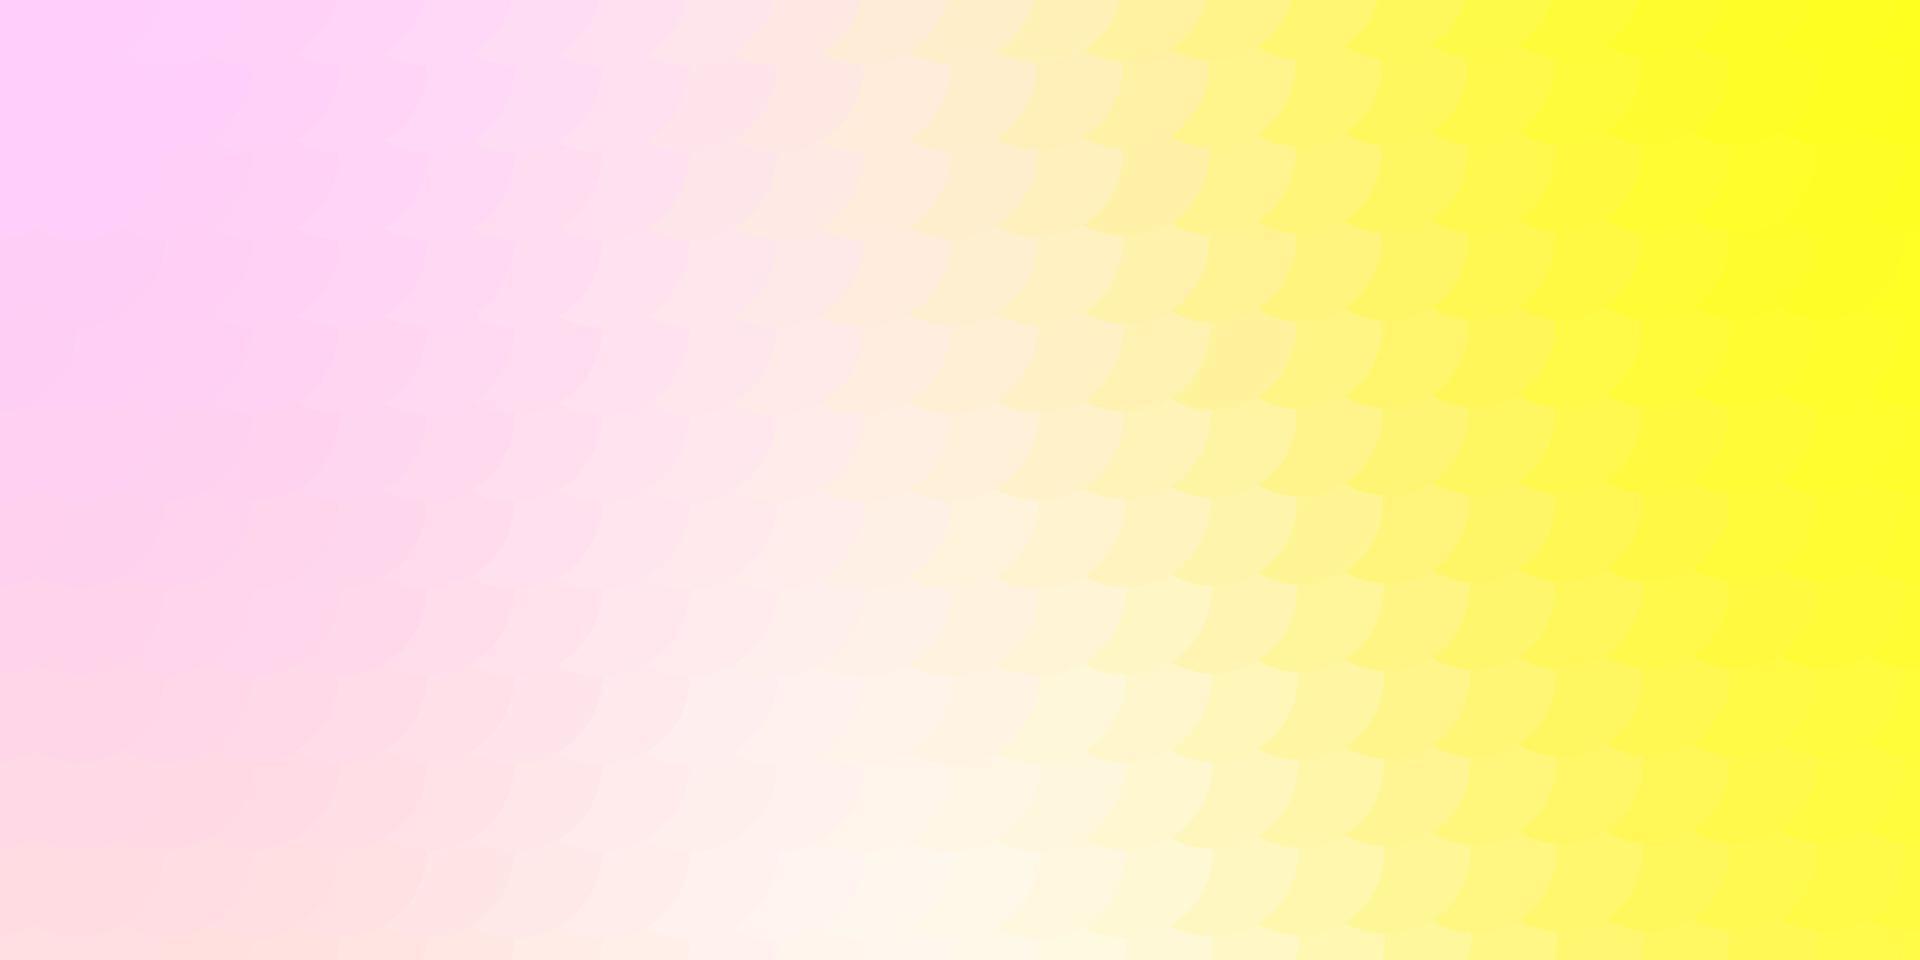 ljusrosa, gul vektorlayout med cirkelformer. vektor